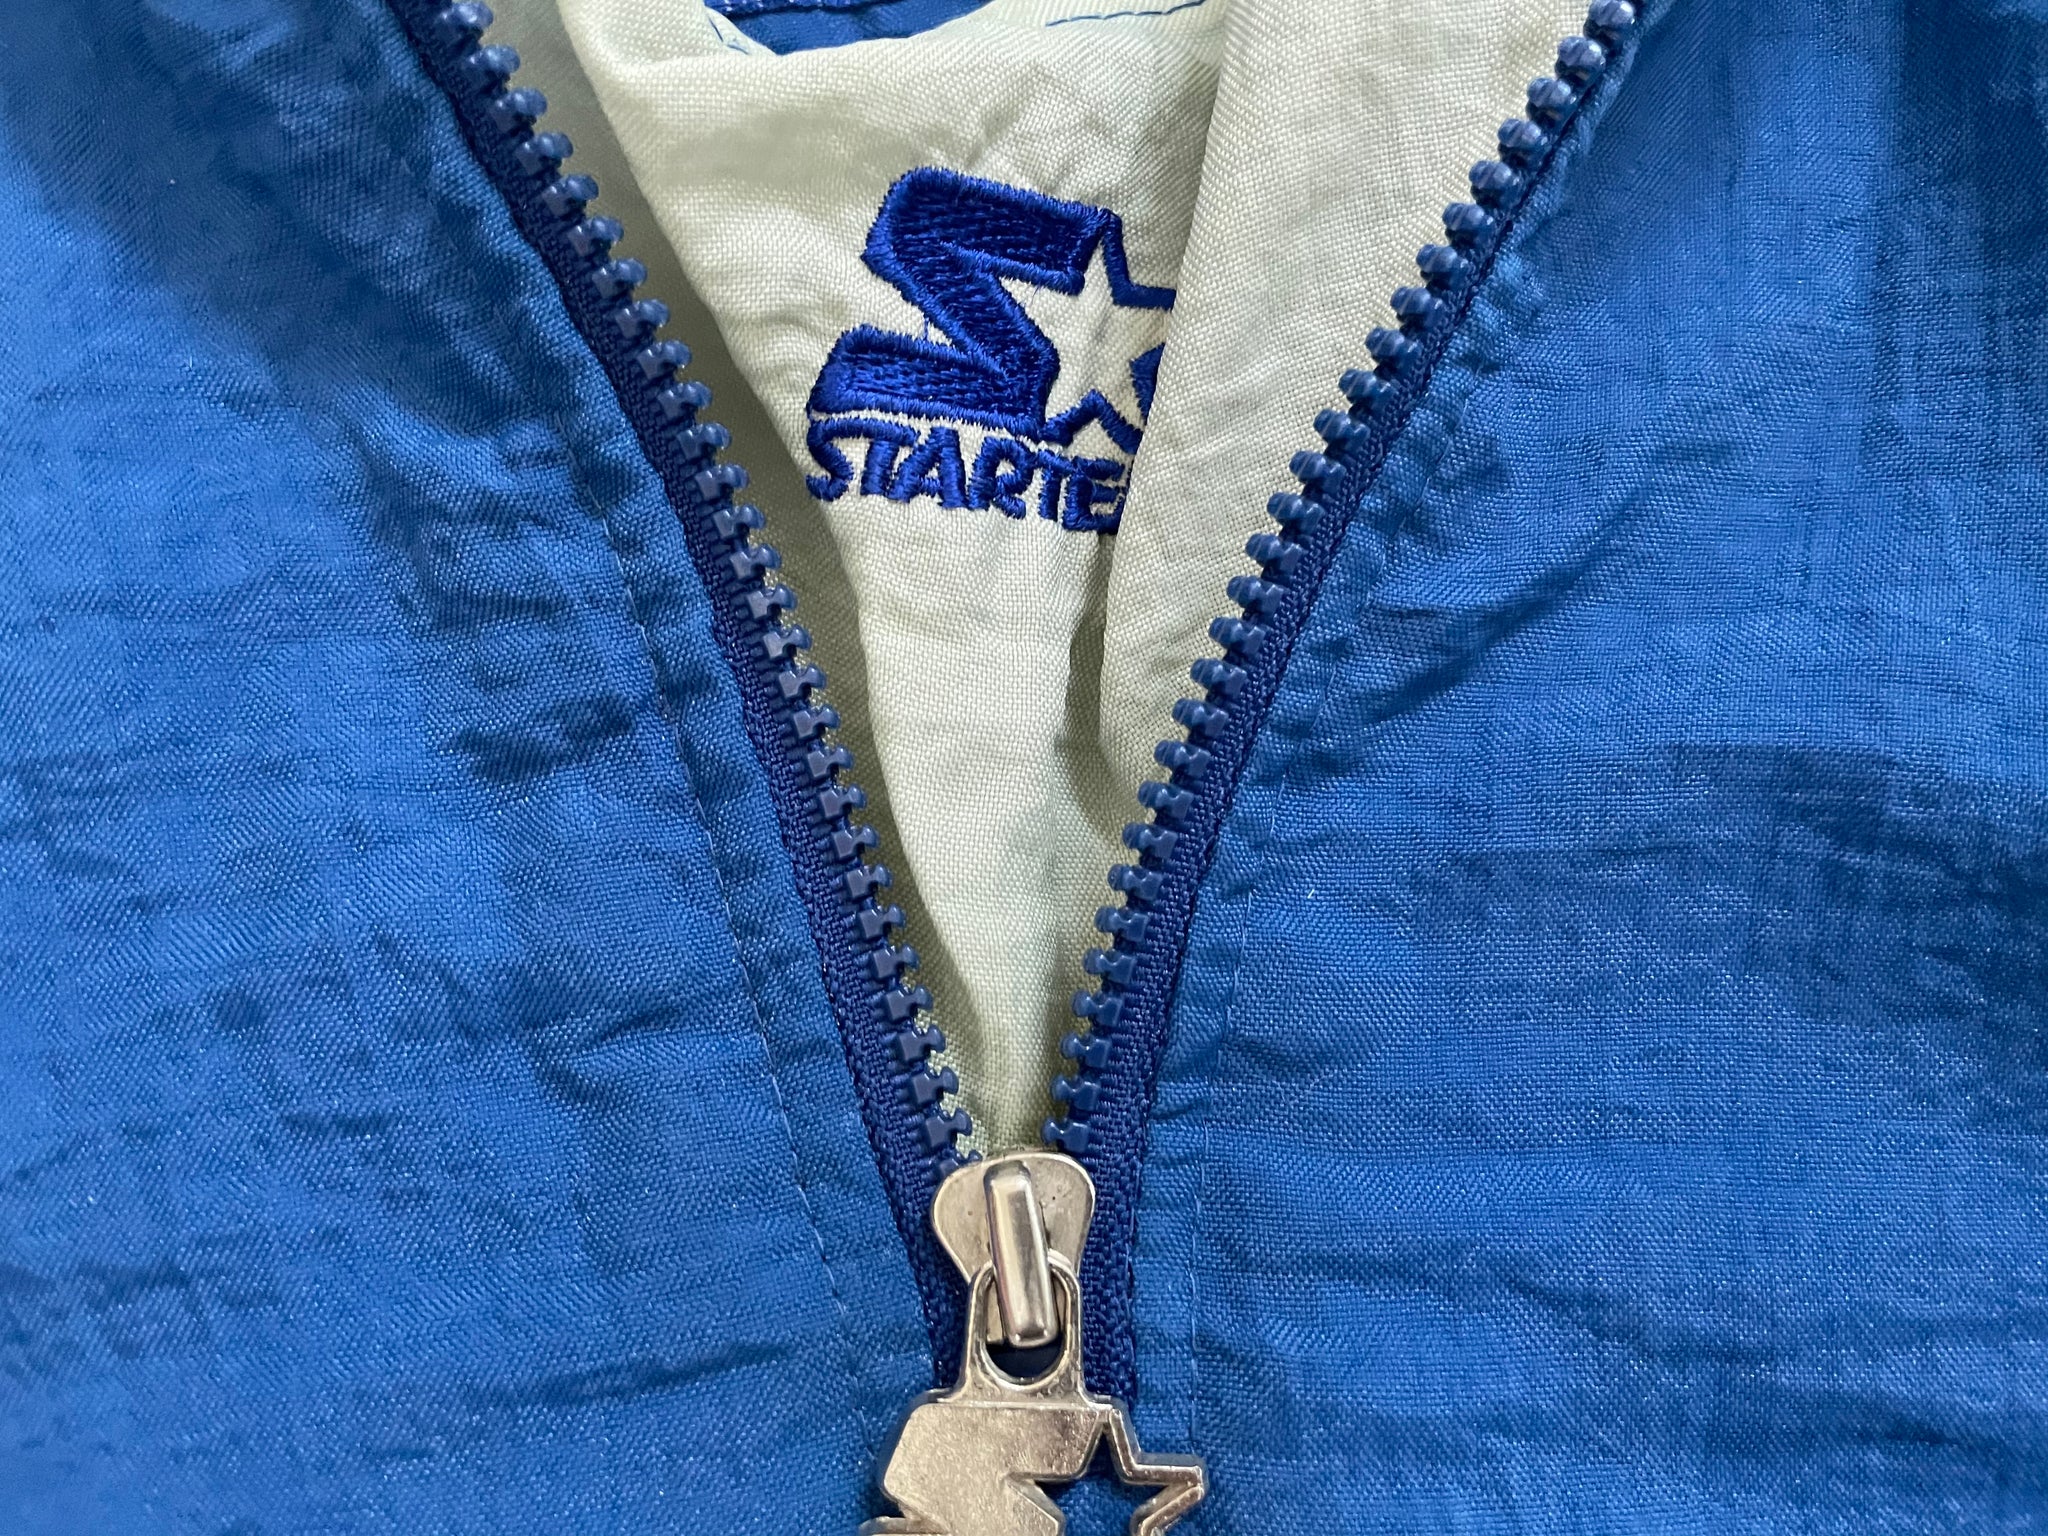 Vintage Dallas Cowboys Starer Parka Football Jacket, Size Medium